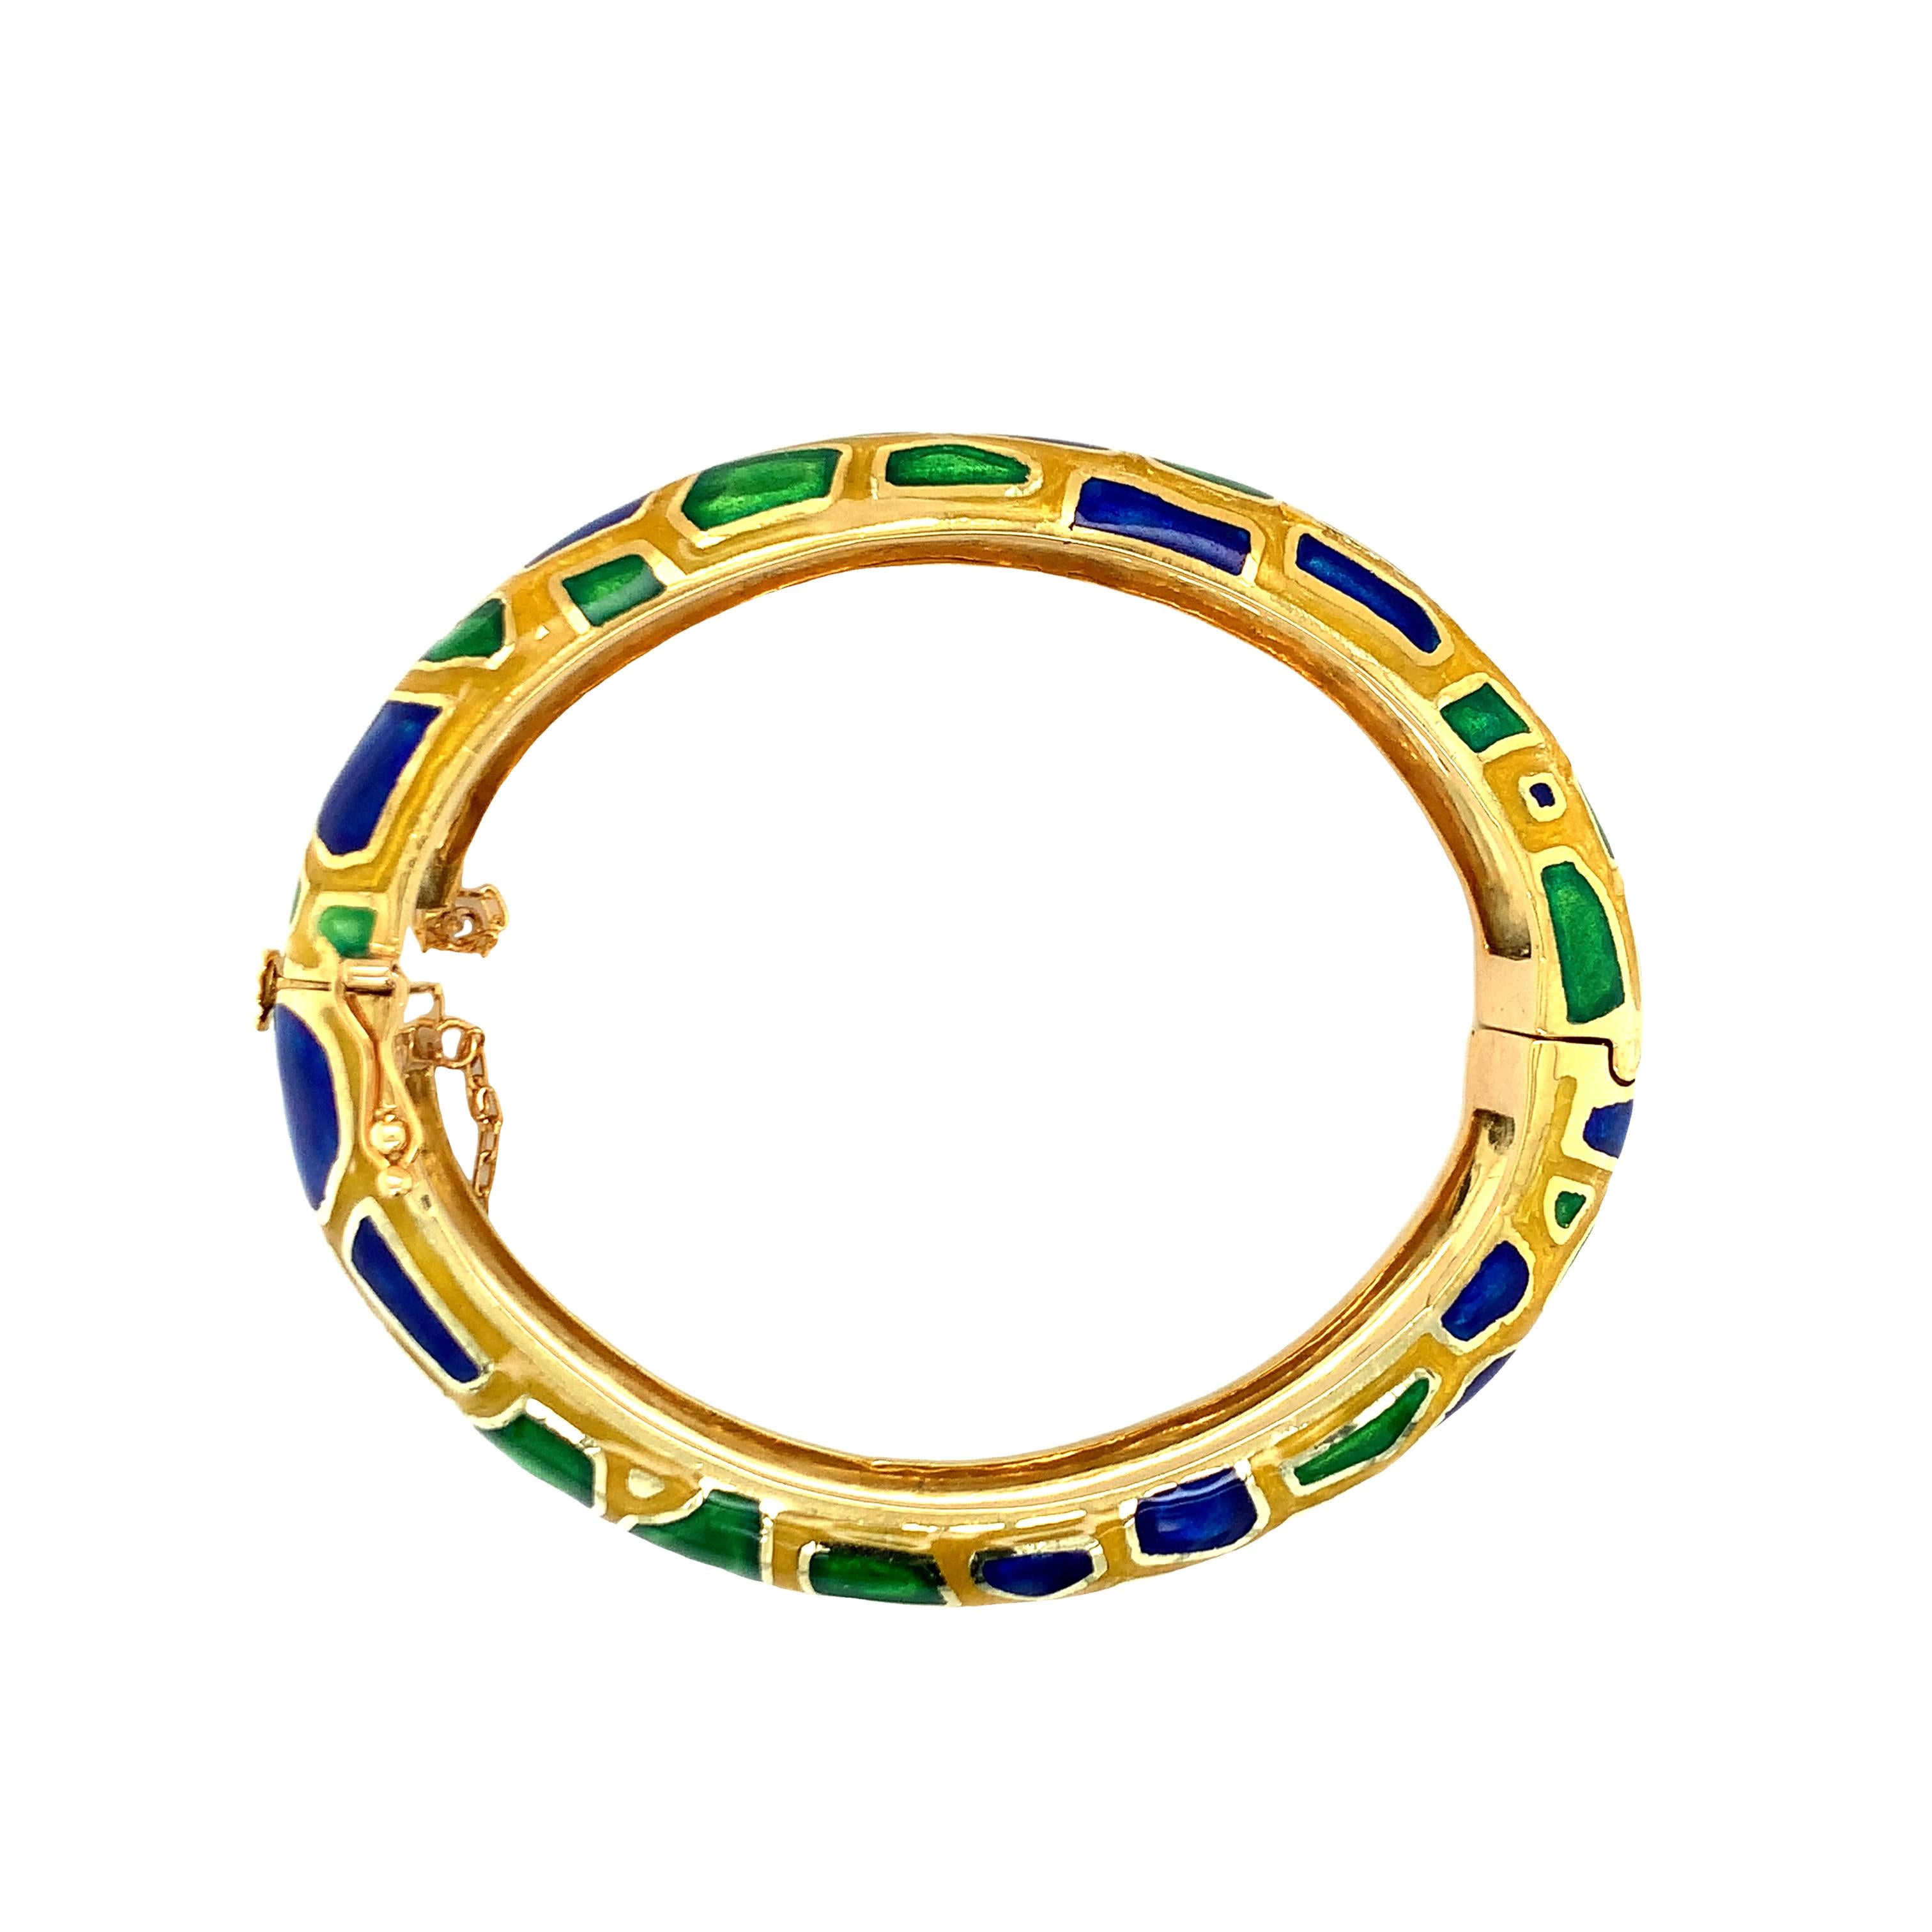 Un bracelet en or jaune 14 carats émaillé bleu, vert et jaune mesurant 15 millimètres de large et 8 millimètres de haut sur le poignet lorsqu'il est porté et pesant 82,5 grammes. Avec bague assortie disponible (R.LL.1).

Chic, audacieux,